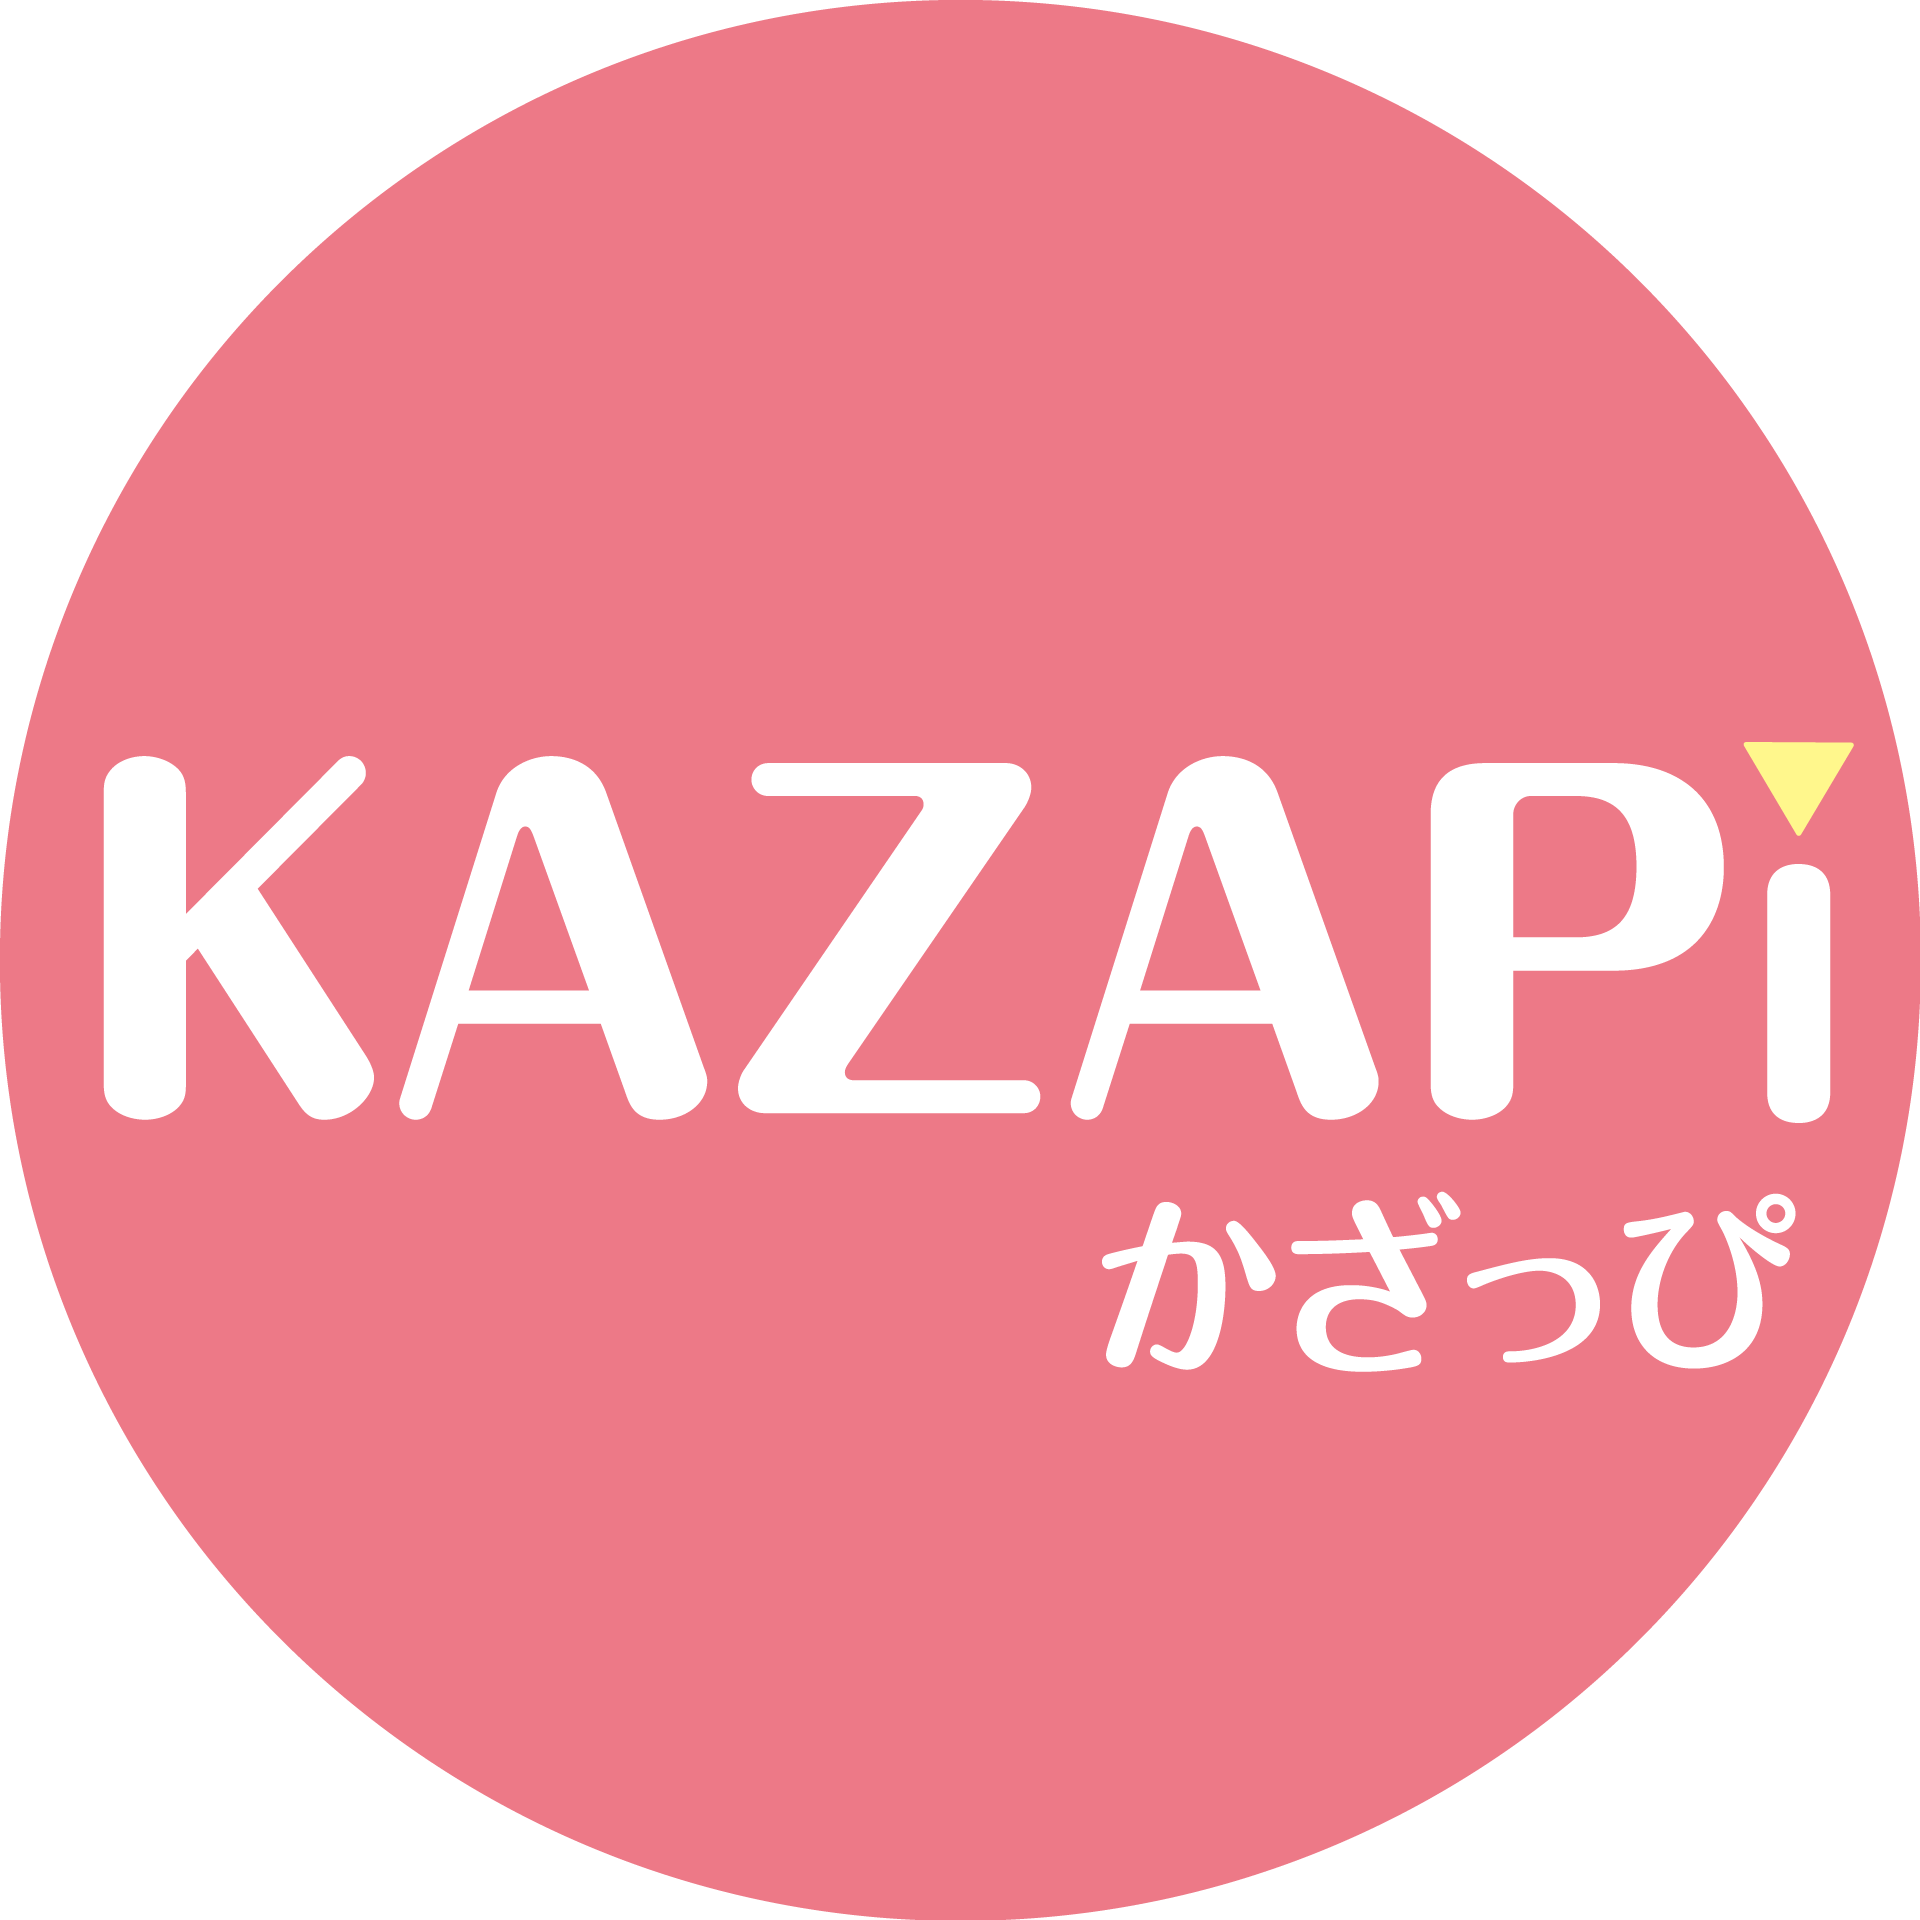 KAZAPi サービスロゴ